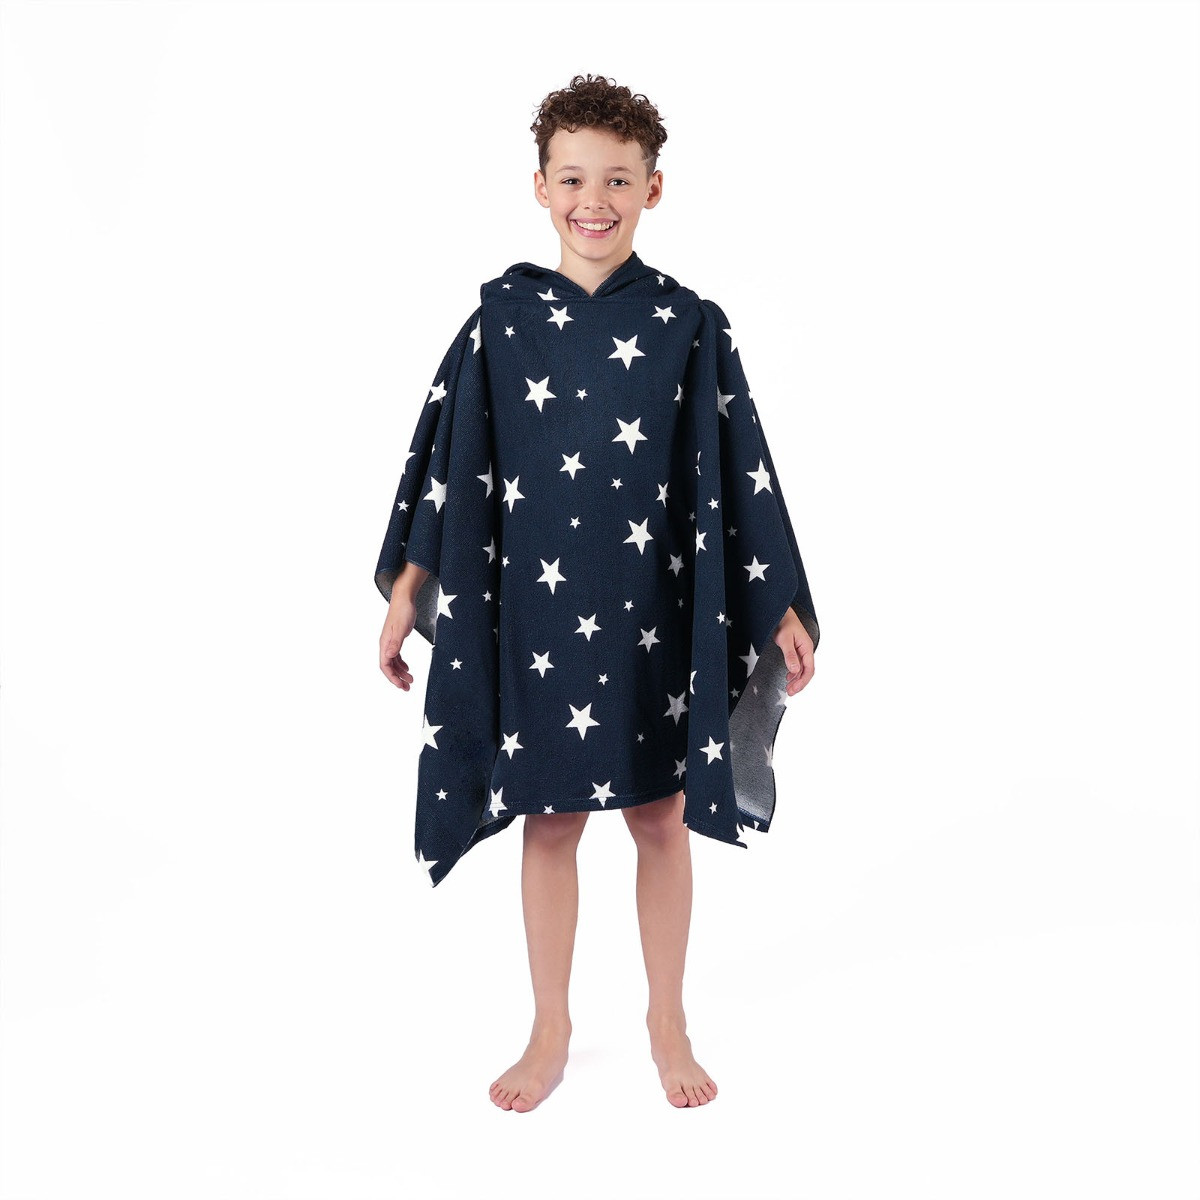 Dreamscene Kids Star Print Towel Poncho, Navy - One Size>